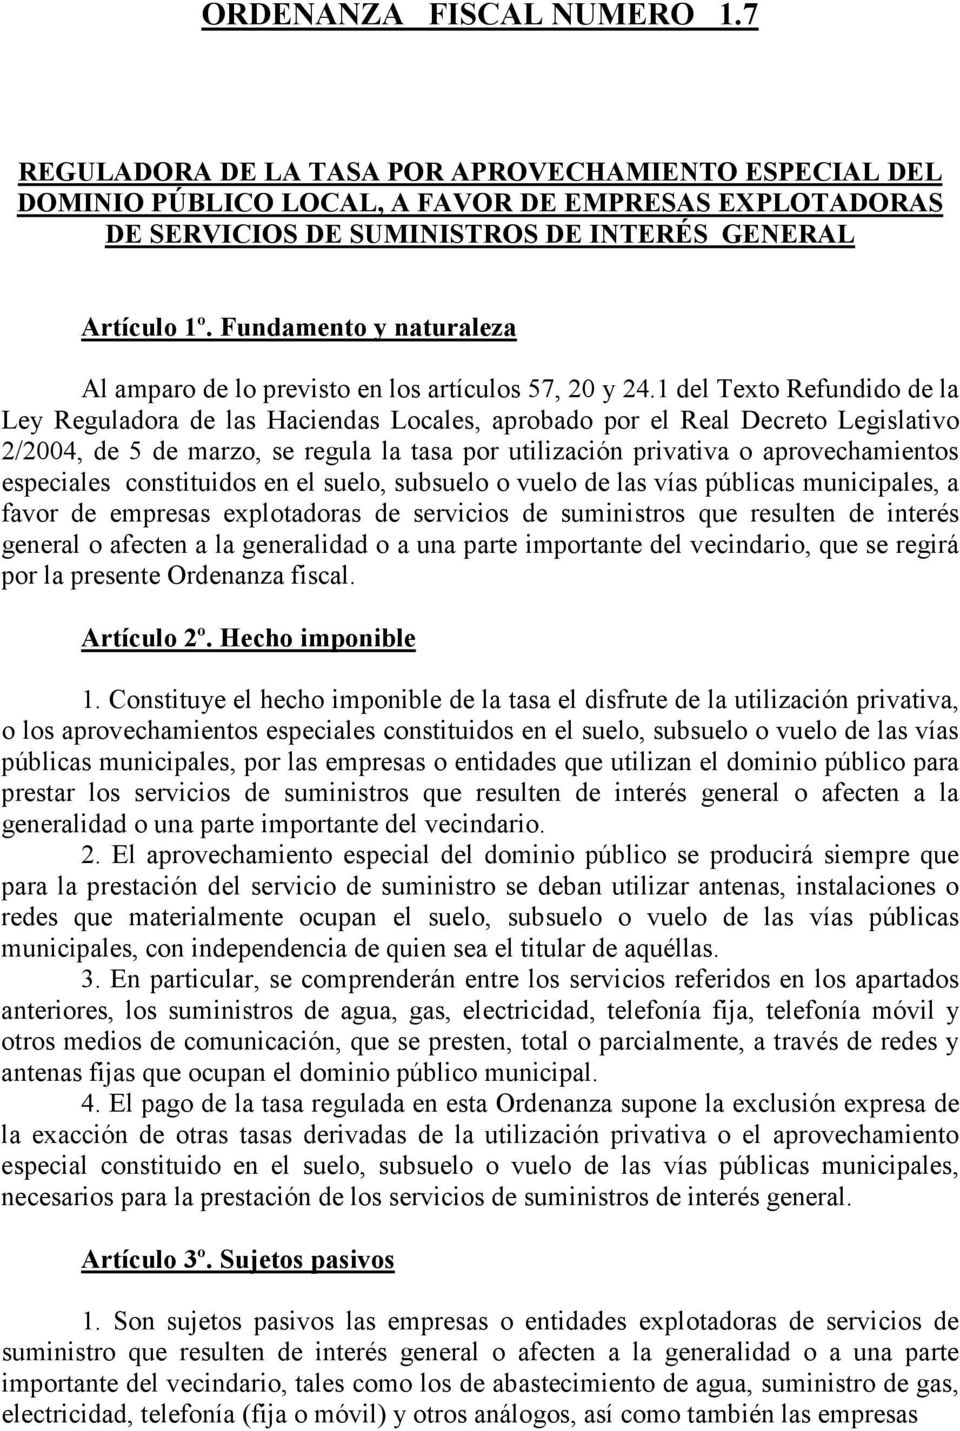 1 del Texto Refundido de la Ley Reguladora de las Haciendas Locales, aprobado por el Real Decreto Legislativo 2/2004, de 5 de marzo, se regula la tasa por utilización privativa o aprovechamientos